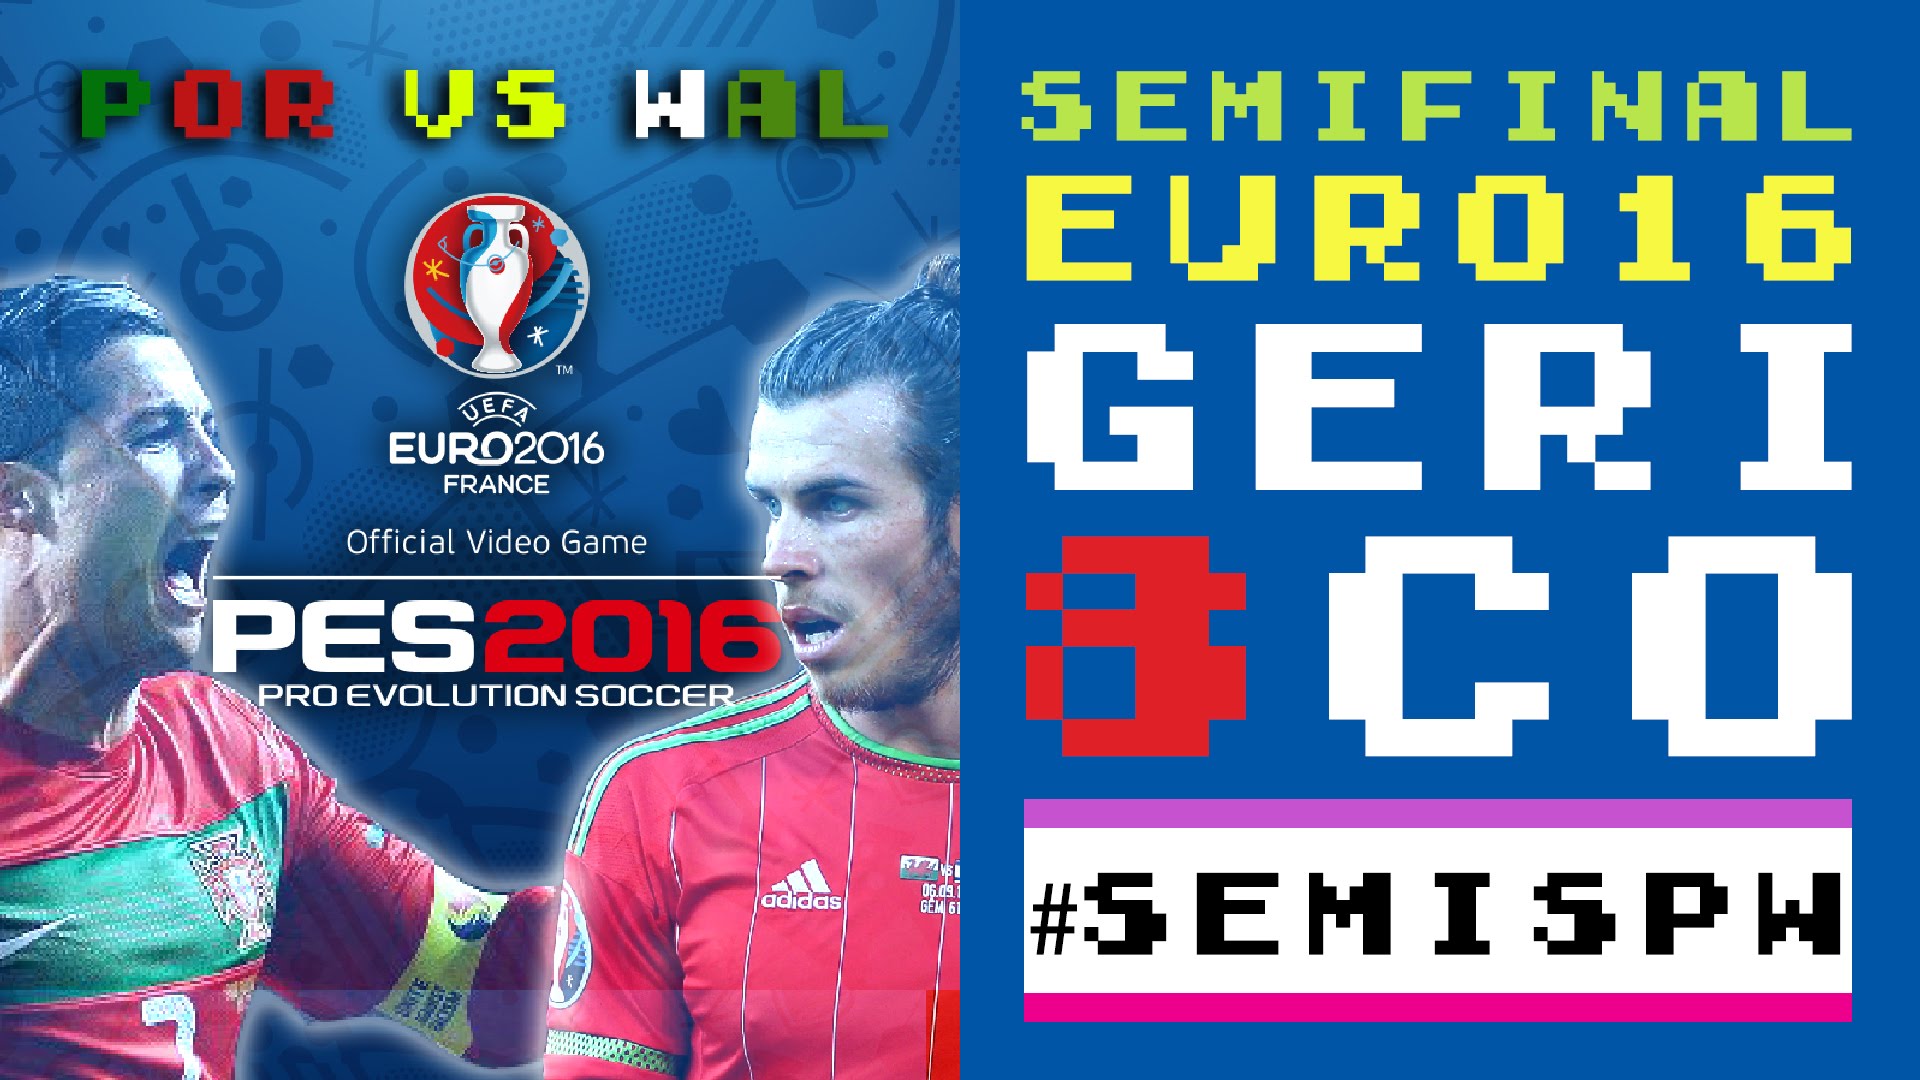 PES 2016 - UEFA EURO 2016 - PORTUGAL VS WALES - SEMIFINAL de LSACompany